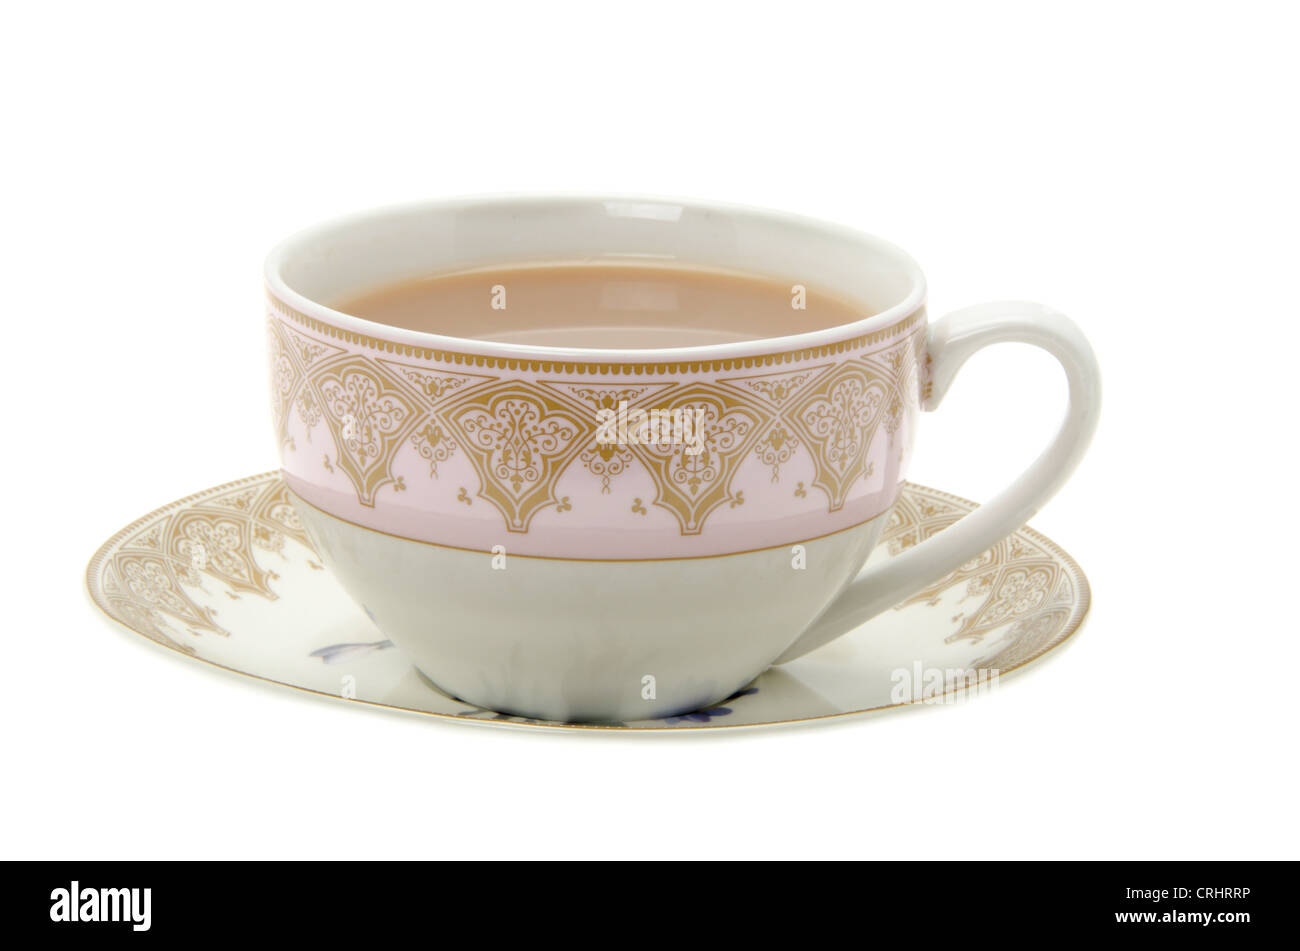 Tasse de thé dans une tasse et soucoupe en porcelaine - studio photo avec un fond blanc. Banque D'Images